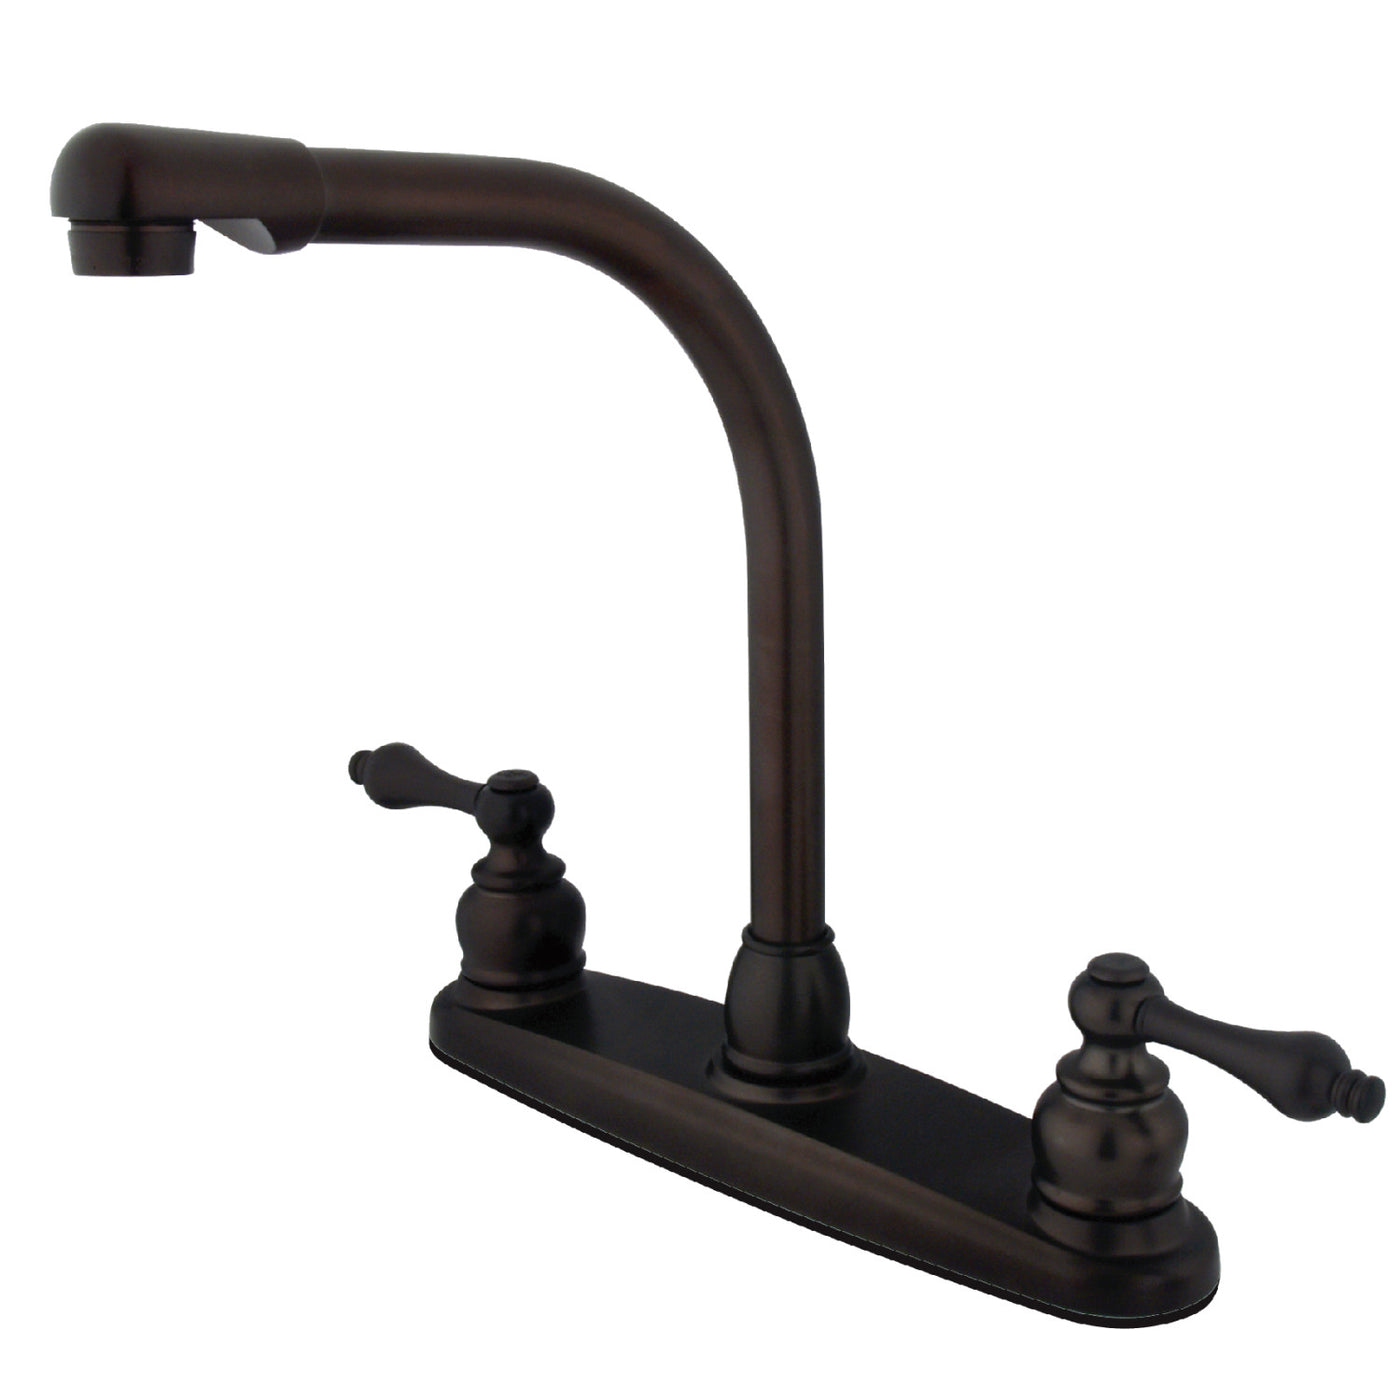 Elements of Design EB715ALLS Centerset Kitchen Faucet, Oil Rubbed Bronze